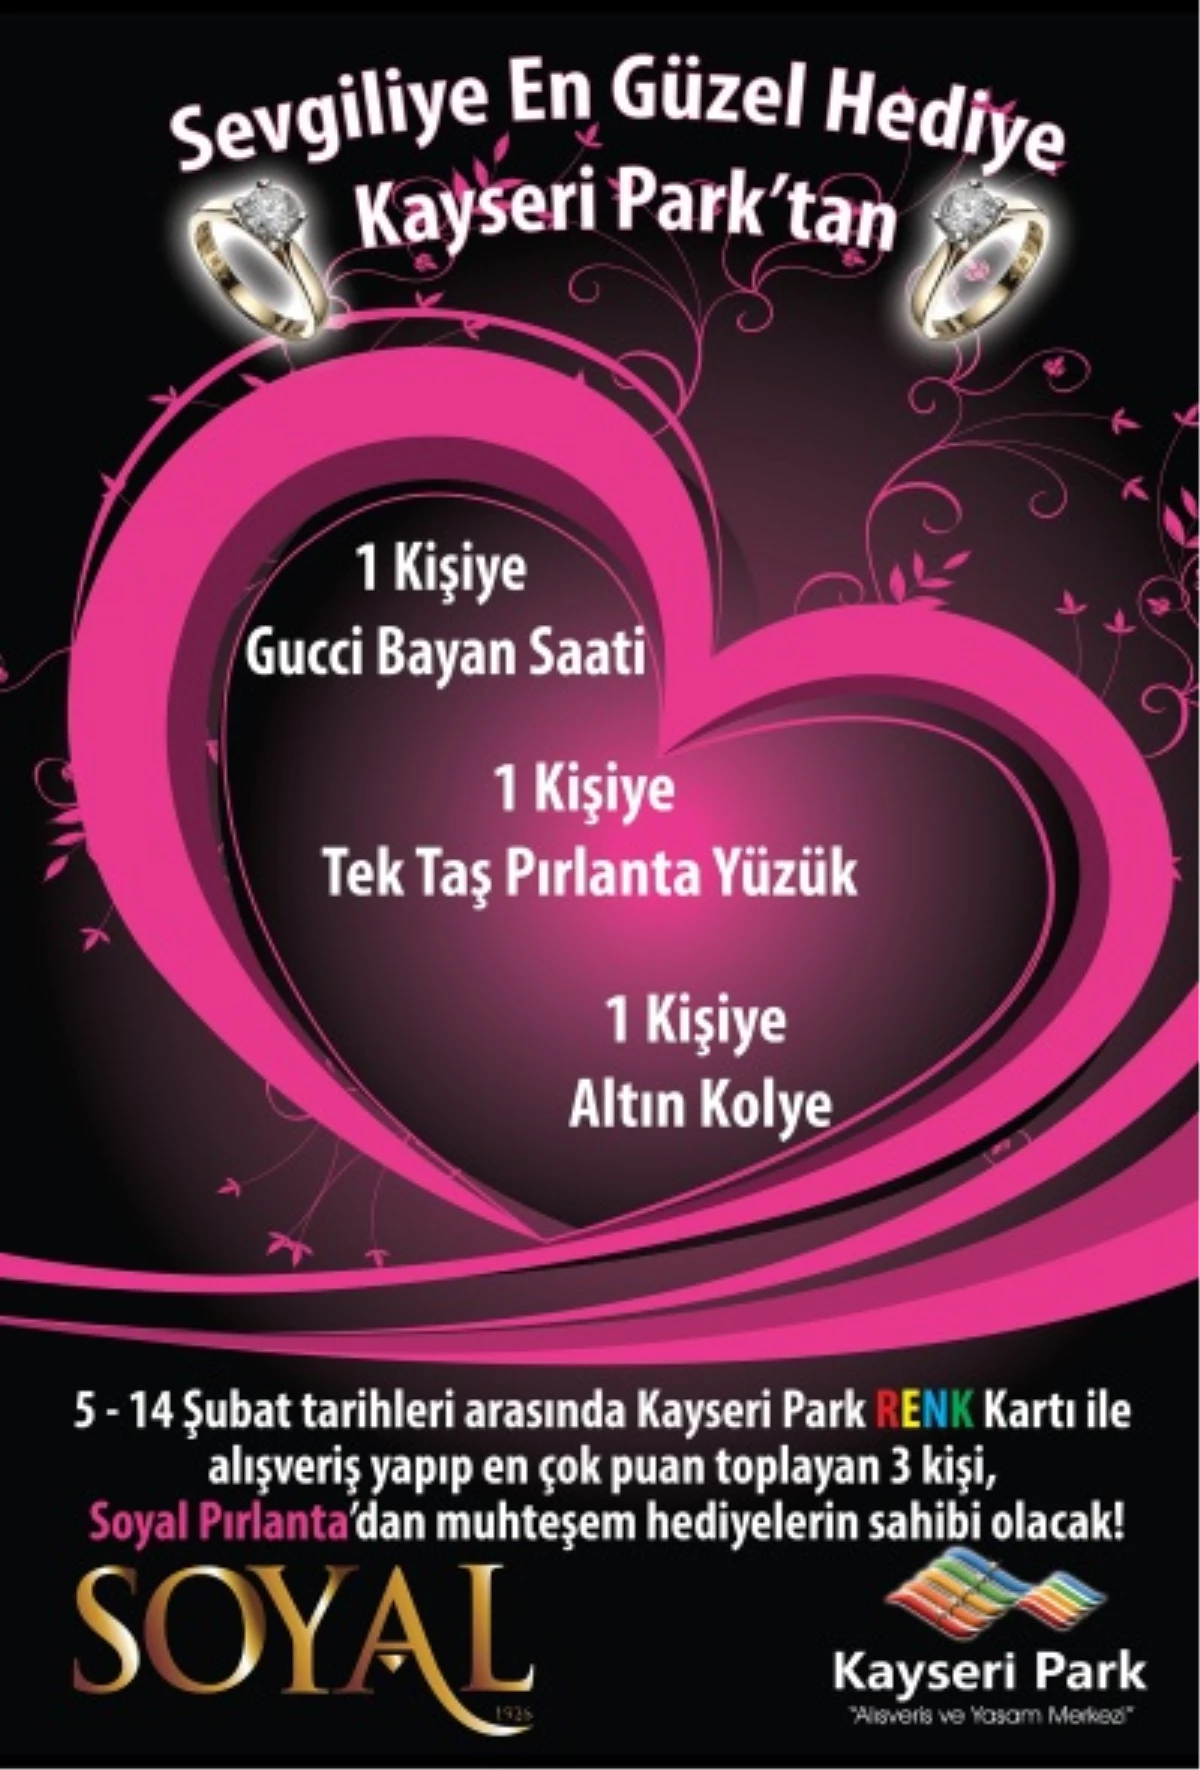 Kayseri Park\'tan Sevgililer Günü\'ne Özel Kampanya